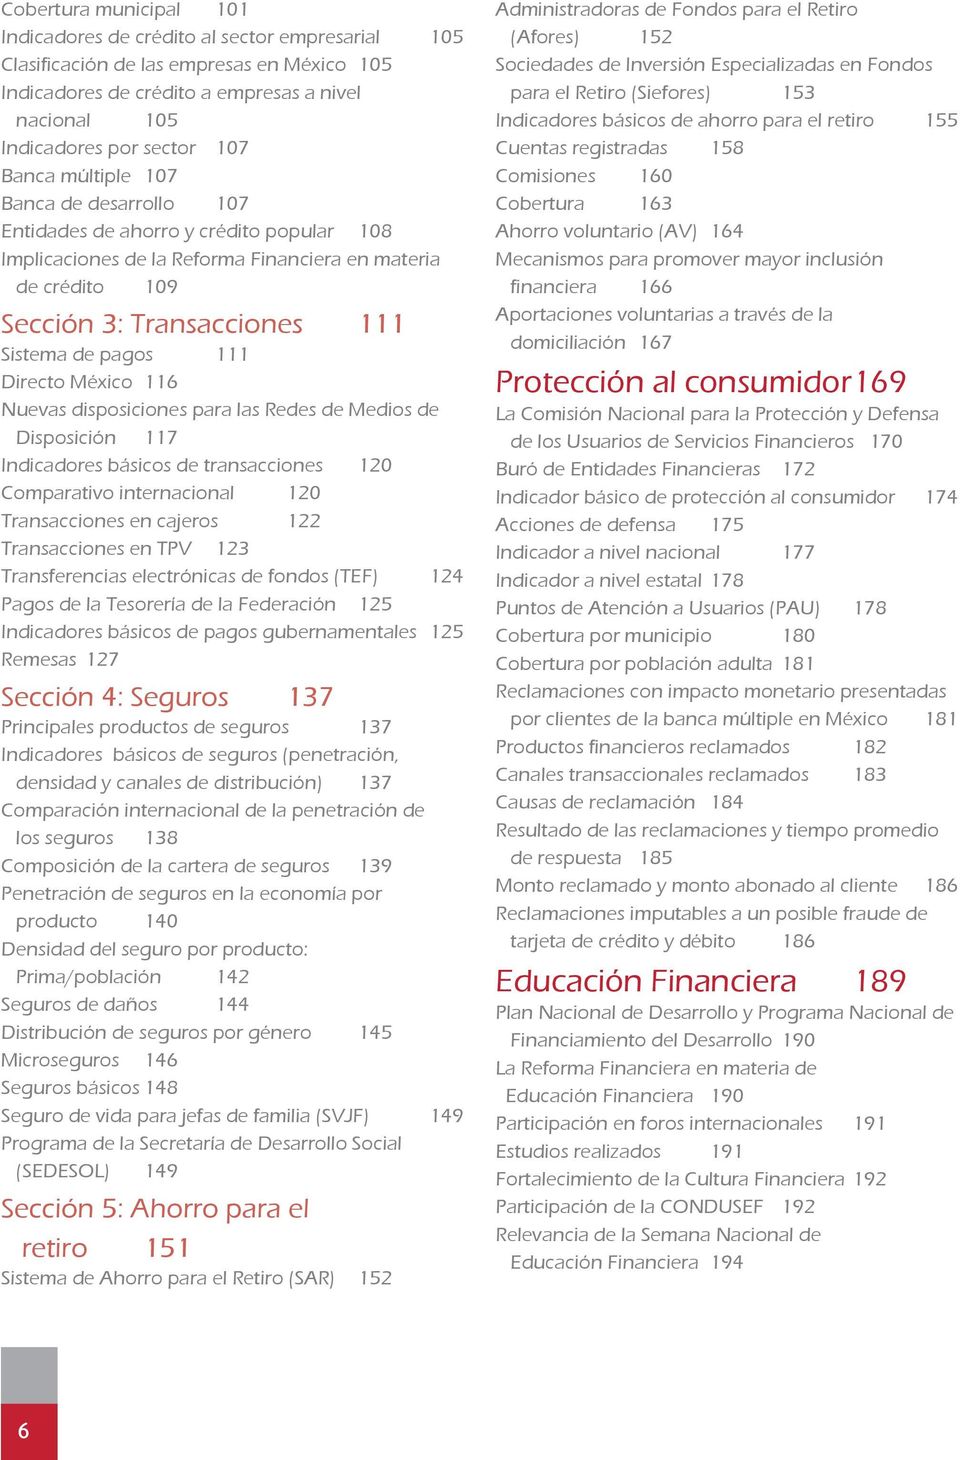 Directo México 116 Nuevas disposiciones para las Redes de Medios de Disposición 117 Indicadores básicos de transacciones 120 Comparativo internacional 120 Transacciones en cajeros 122 Transacciones